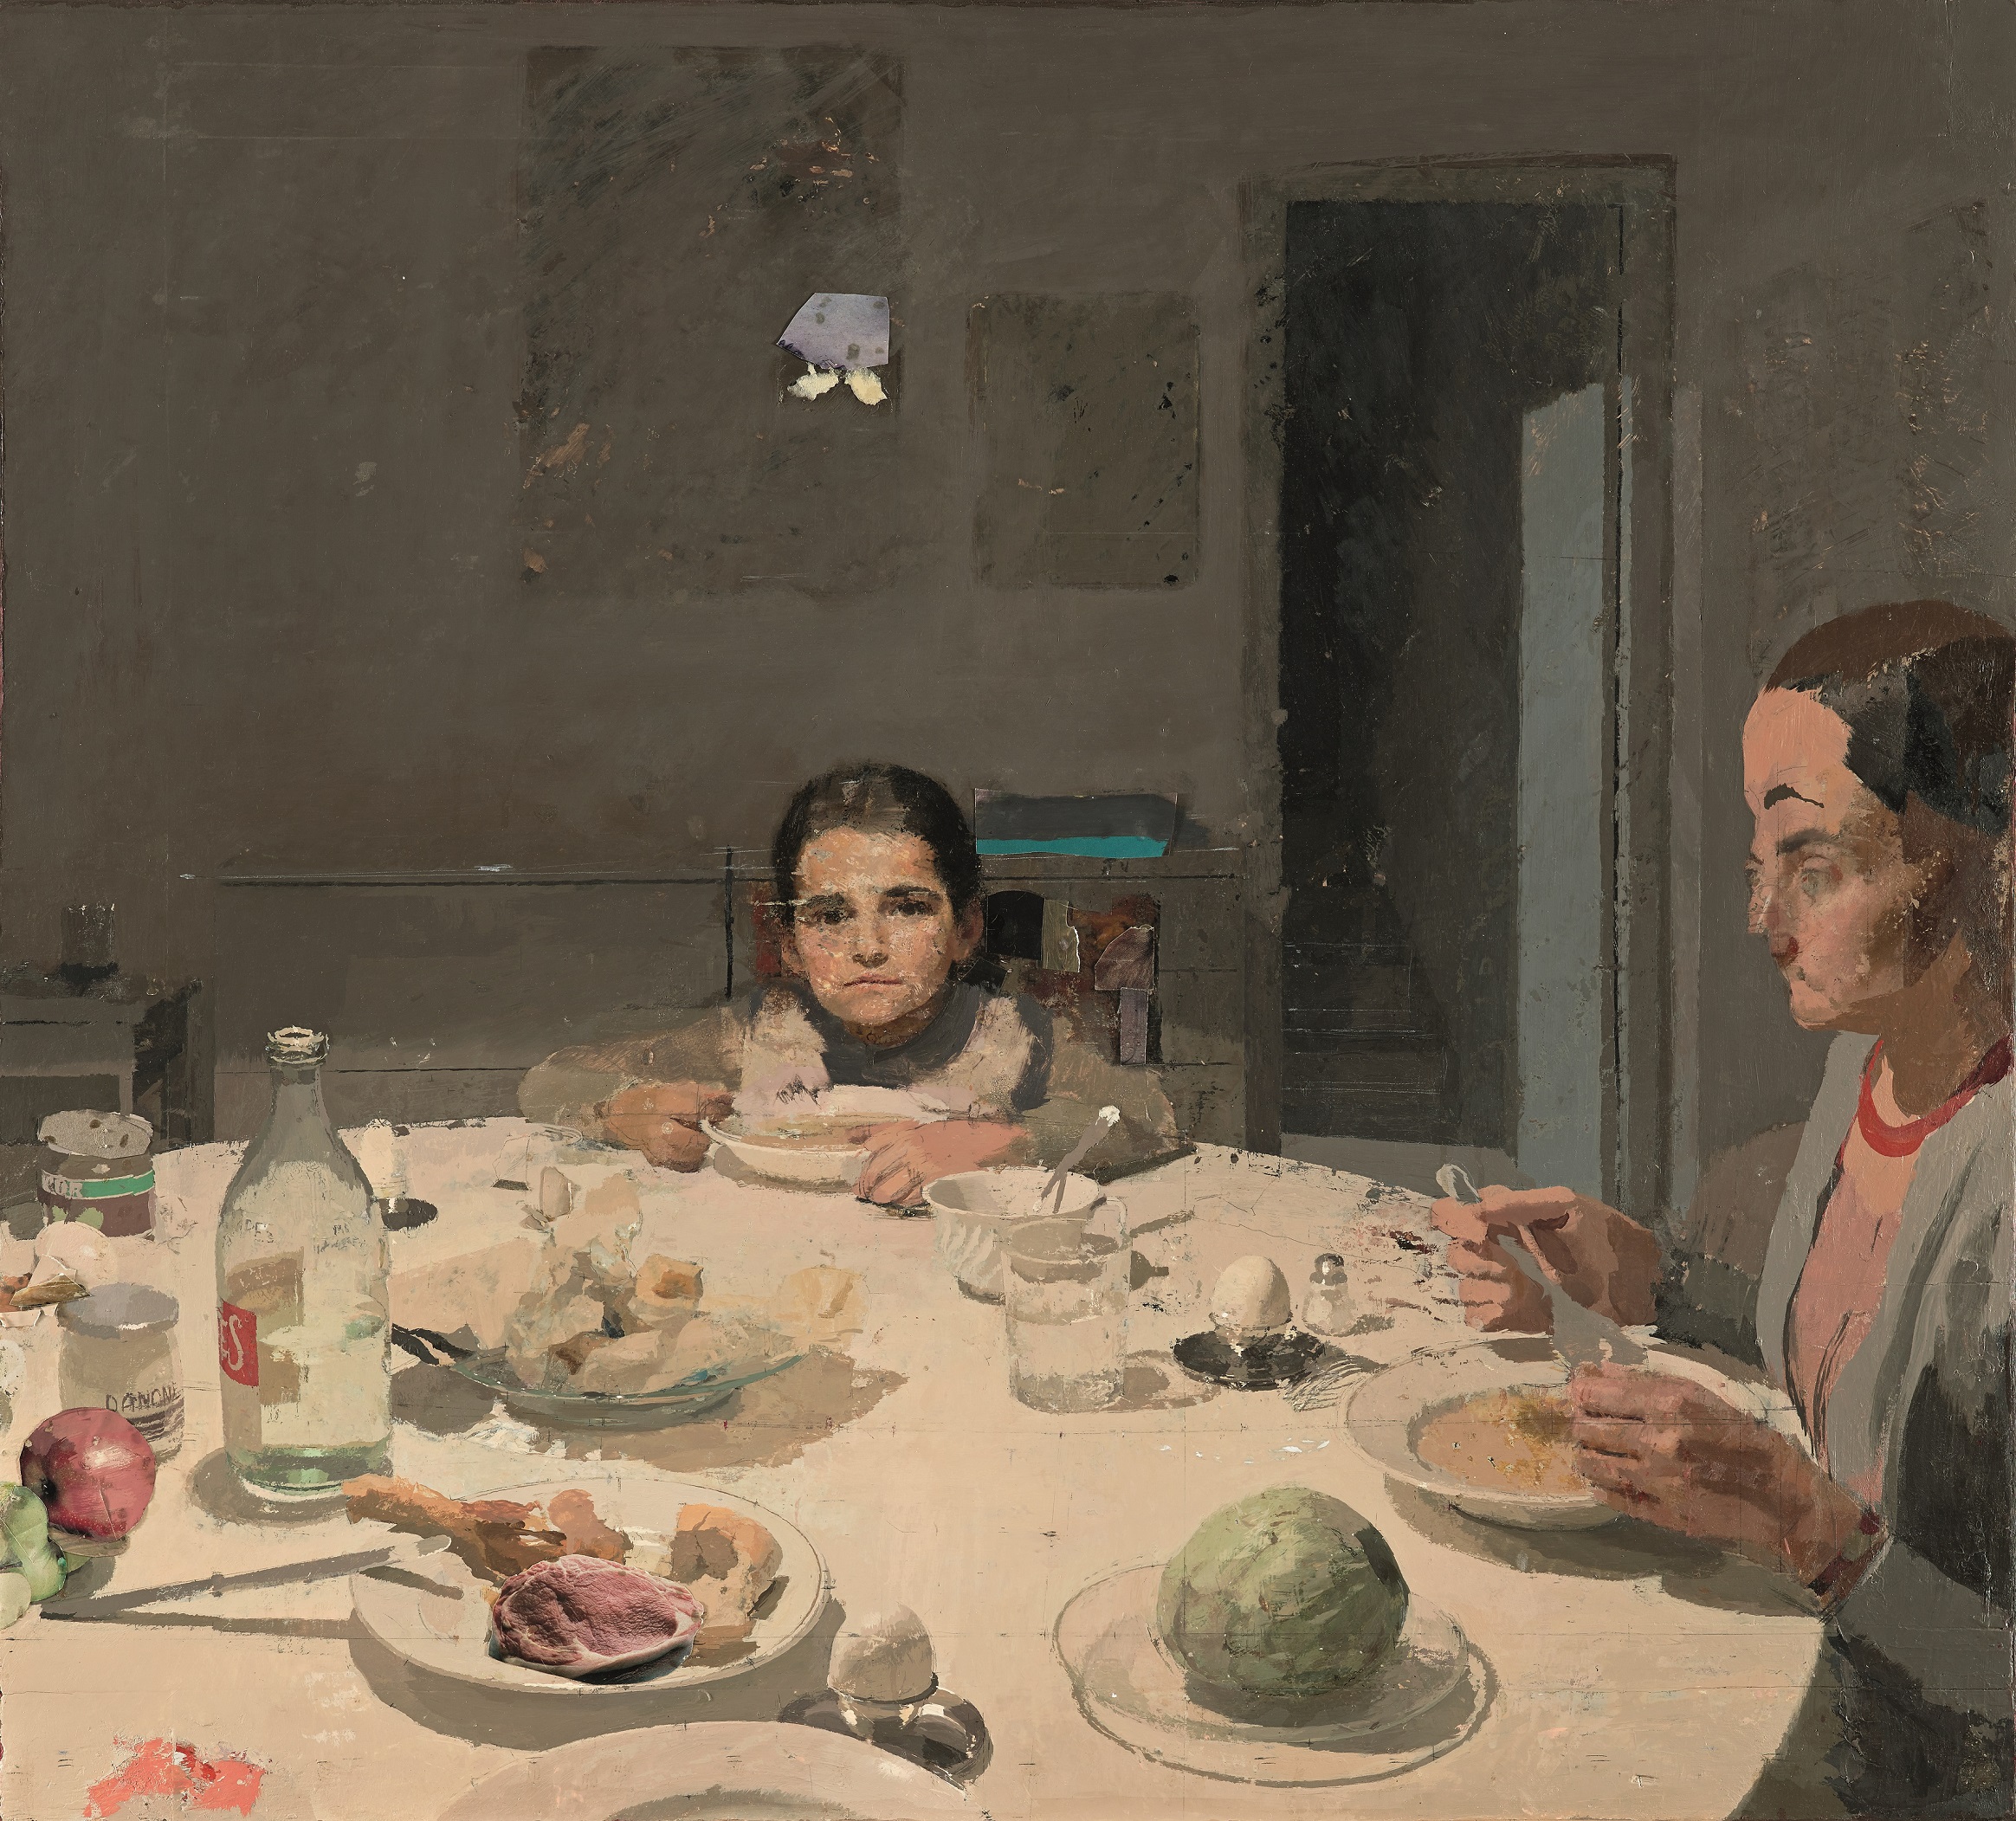 La cena, de Antonio López